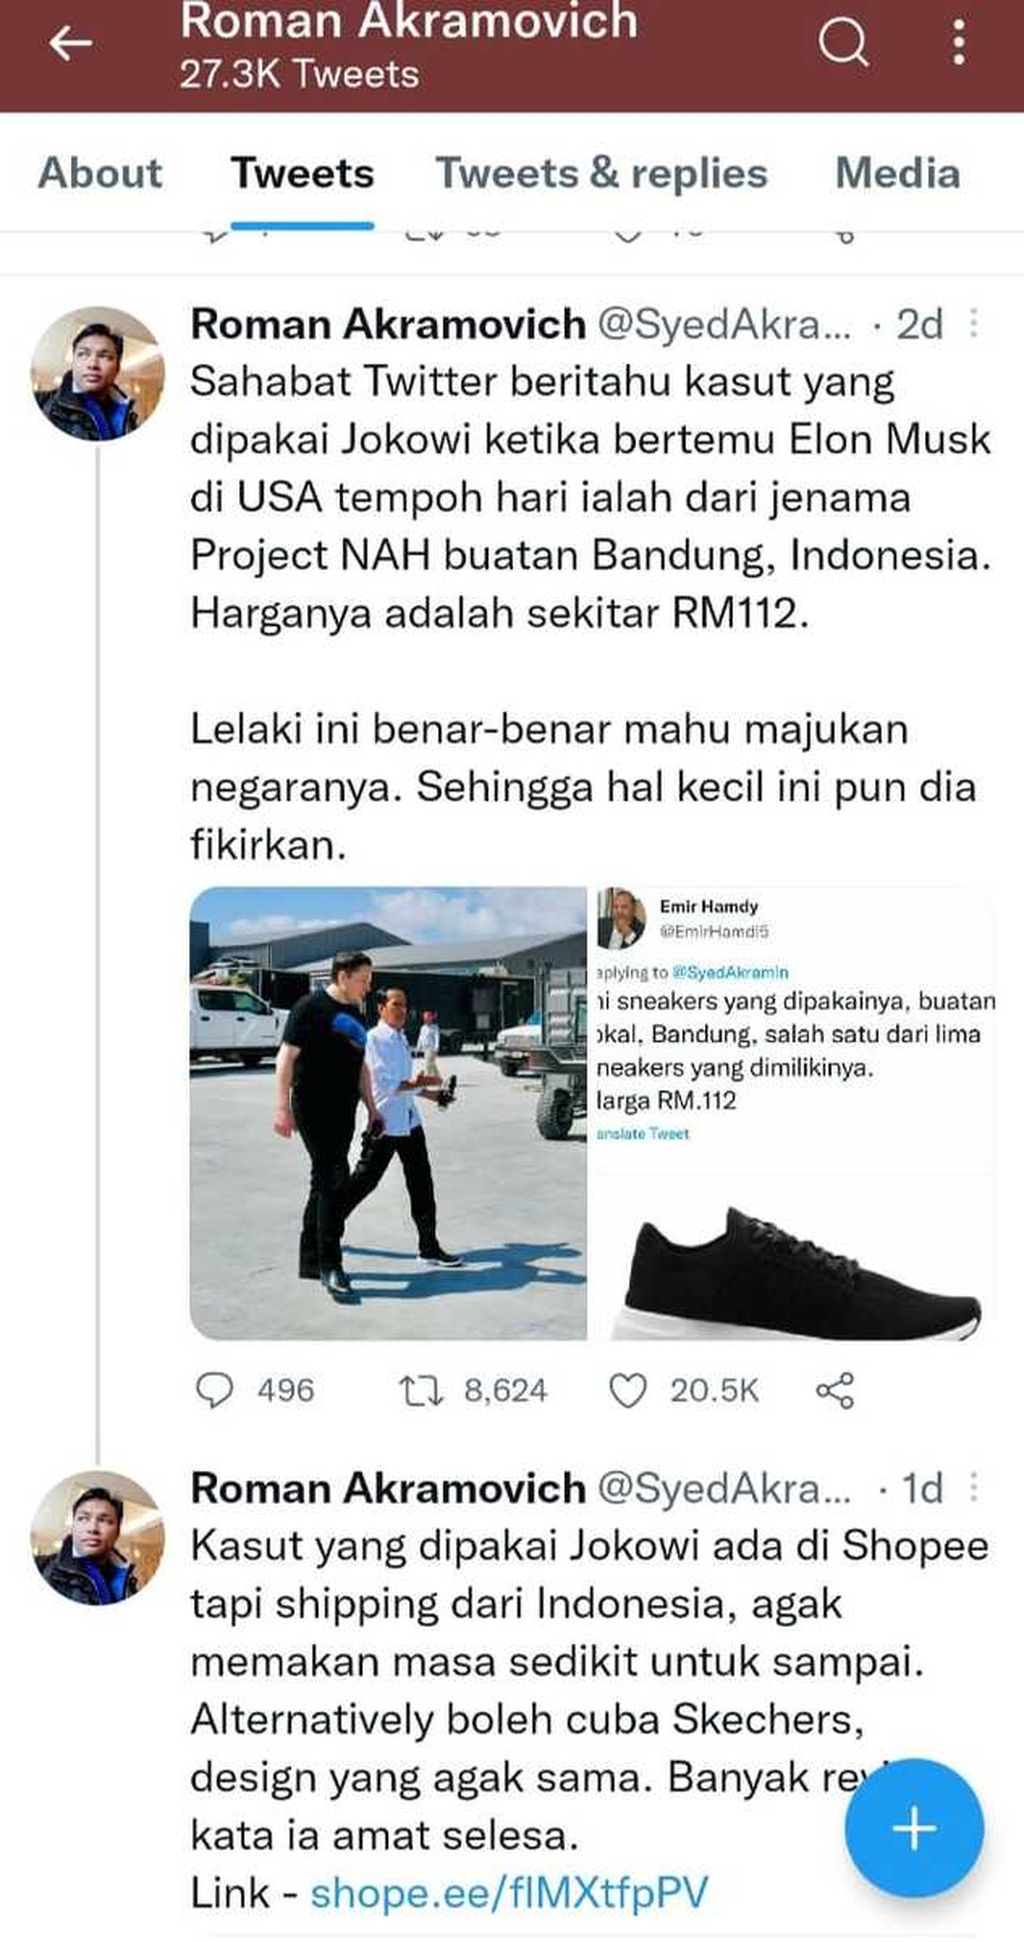 Warganet Malaysia mengomentari aktivitas dan sepatu Presiden Jokowi di media sosial. Komentar positif dari negeri seberang ini berbalas komentar warganet lain baik dari negeri jiran maupun dari Indonesia.